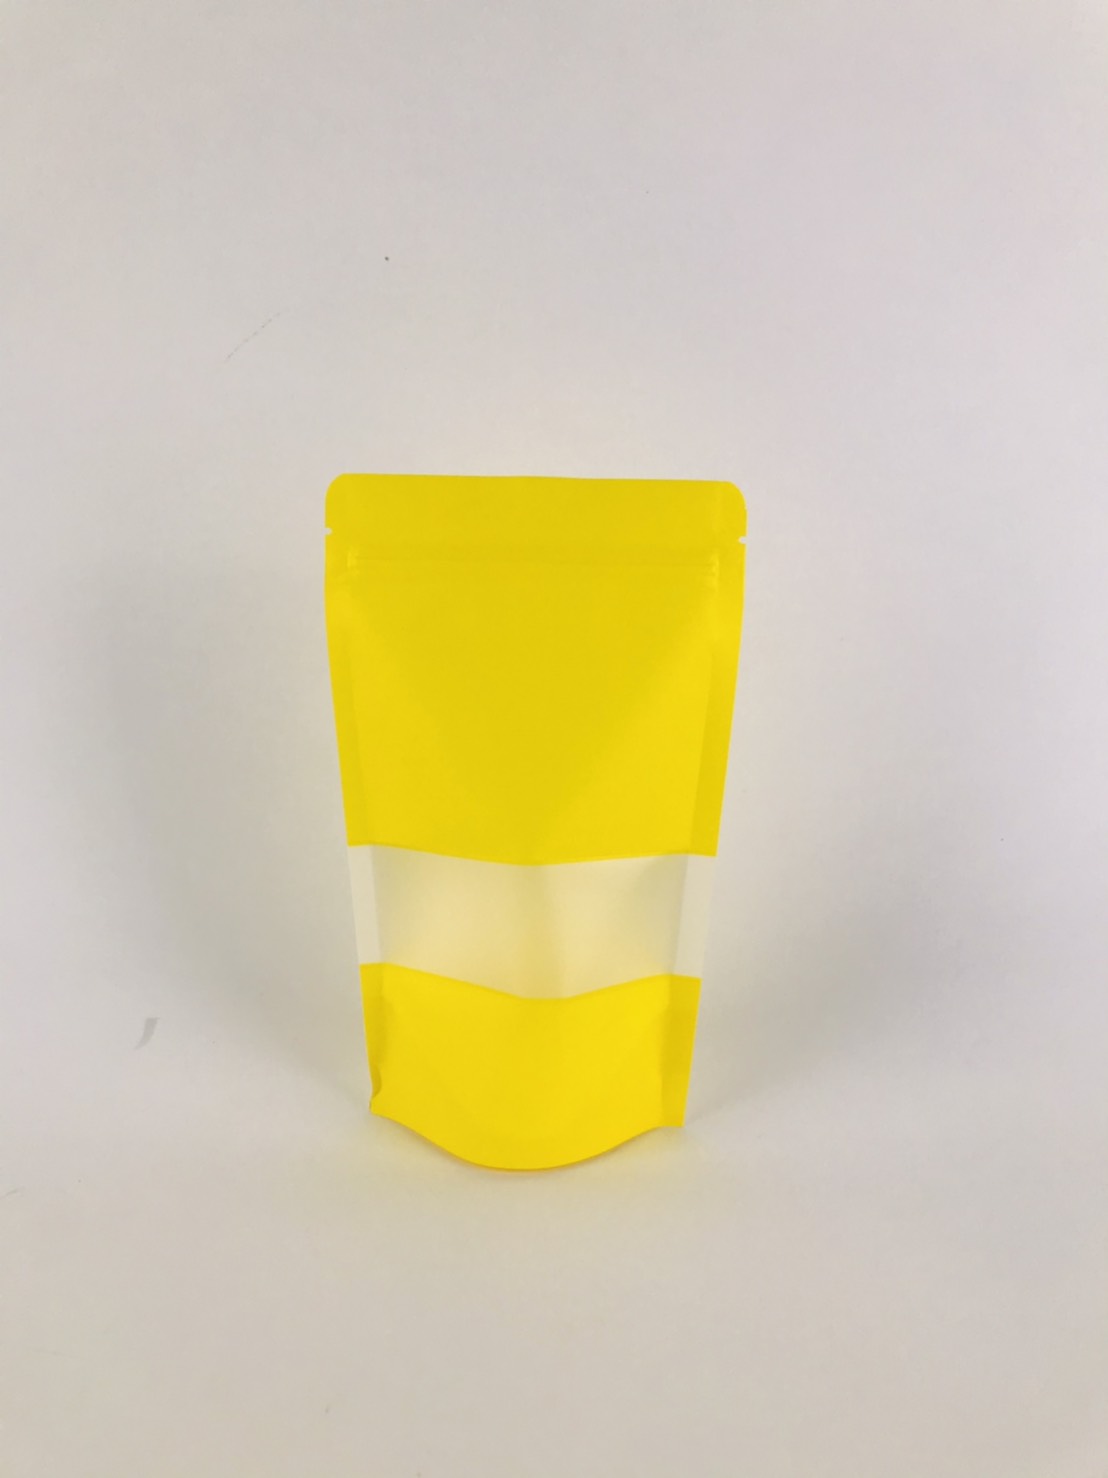 ถุงซิปล็อค ถุงกระดาษคราฟท์ มีหน้าต่าง ตั้งได้ ขนาด 12×20 ซม. สีเหลือง (แพคละ 50ใบ)